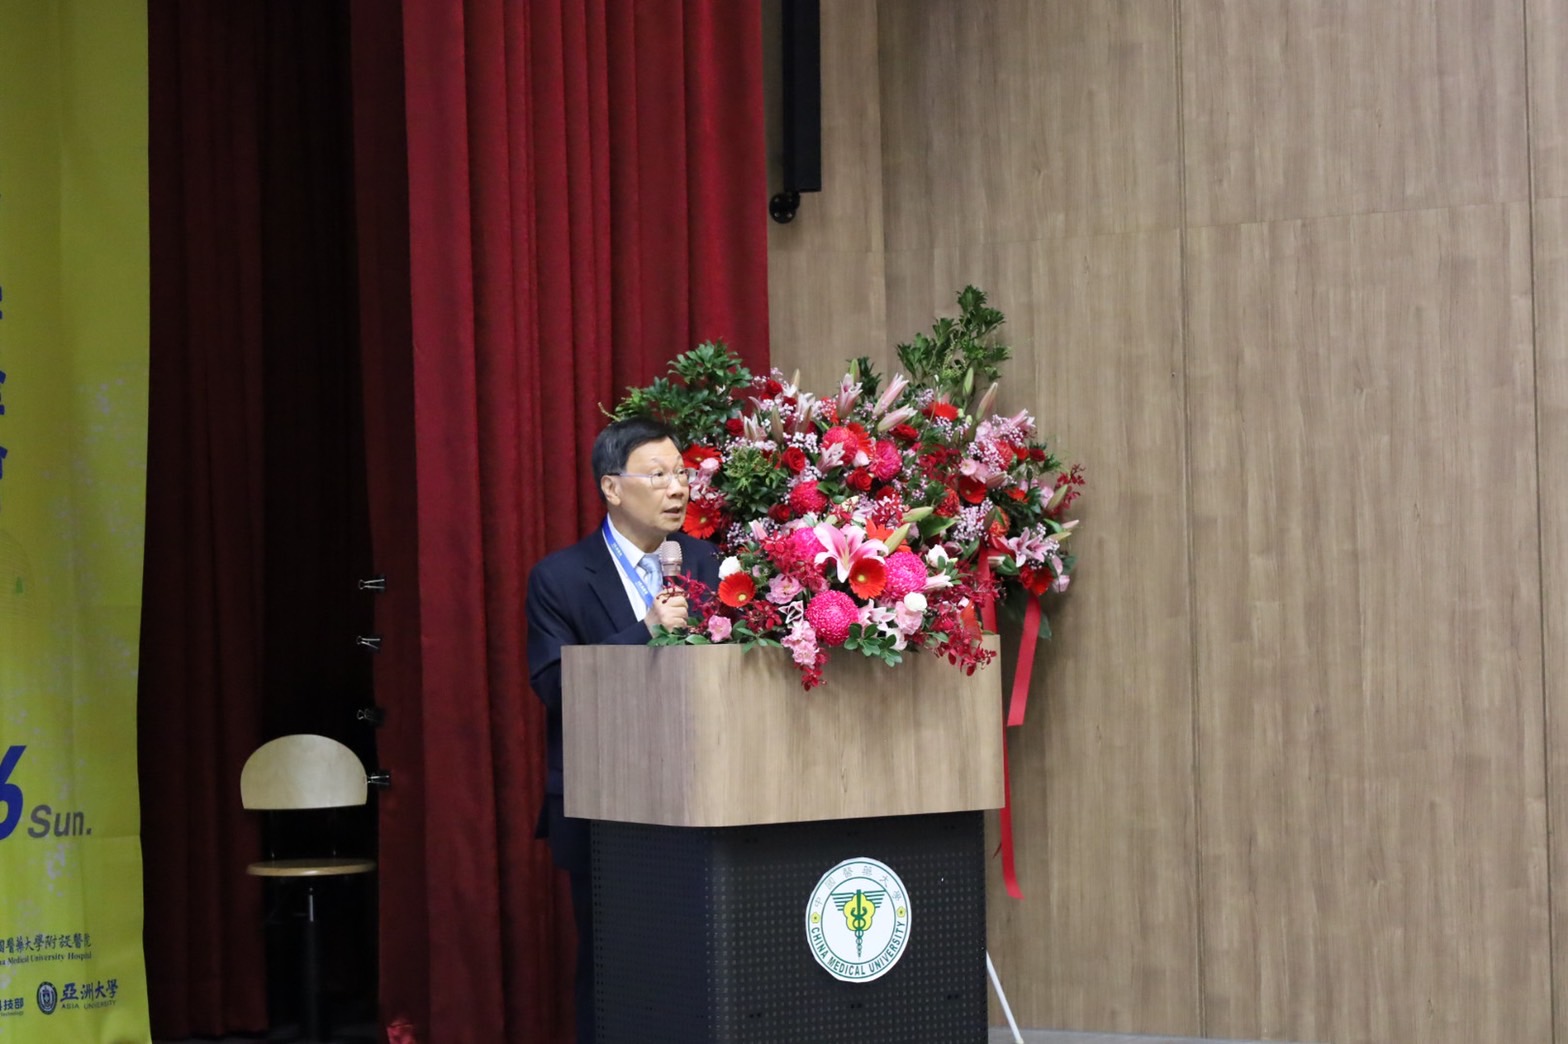 圖為亞洲大學校長蔡進發受邀在「2022台灣國際創新生物醫學峰會」致詞